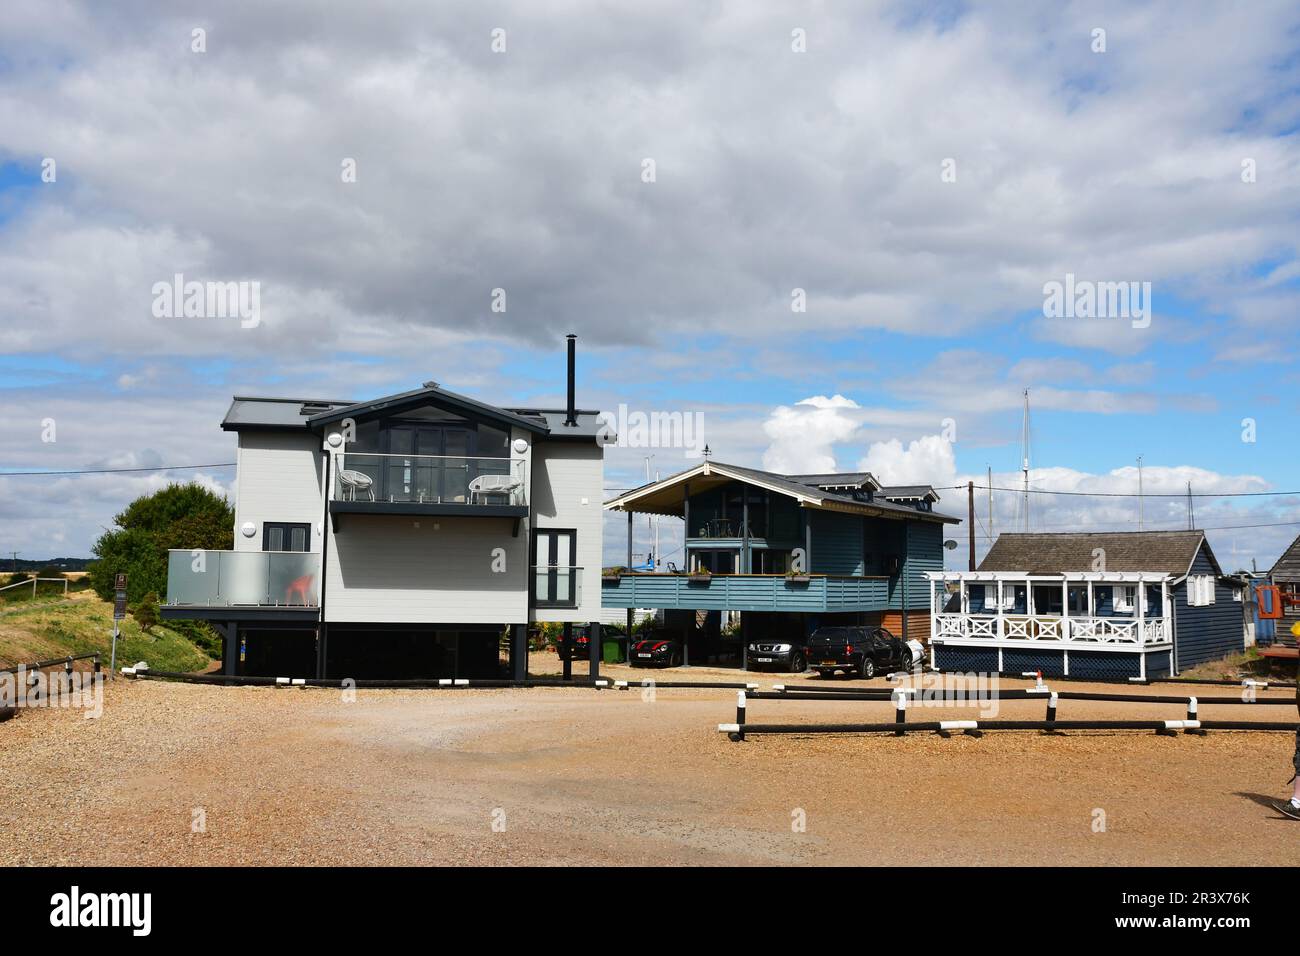 Maisons modernes sur pilotis en raison du risque d'inondation. Felixstowe Ferry, Felixstowe, Suffolk, Royaume-Uni Banque D'Images